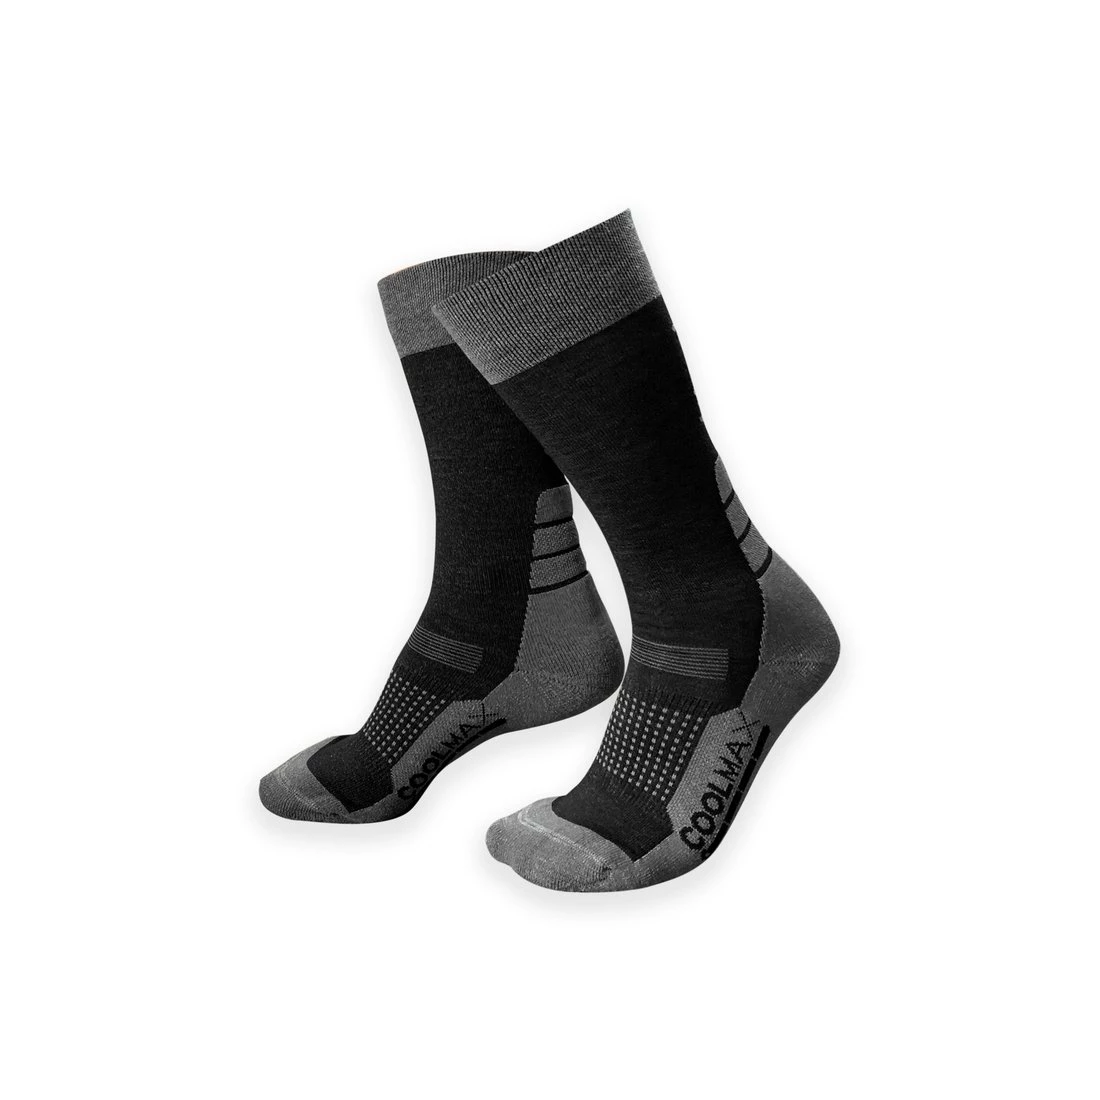 Gamakatsu G-Socks Cool Outdoorsocken #35-38 Black Grey